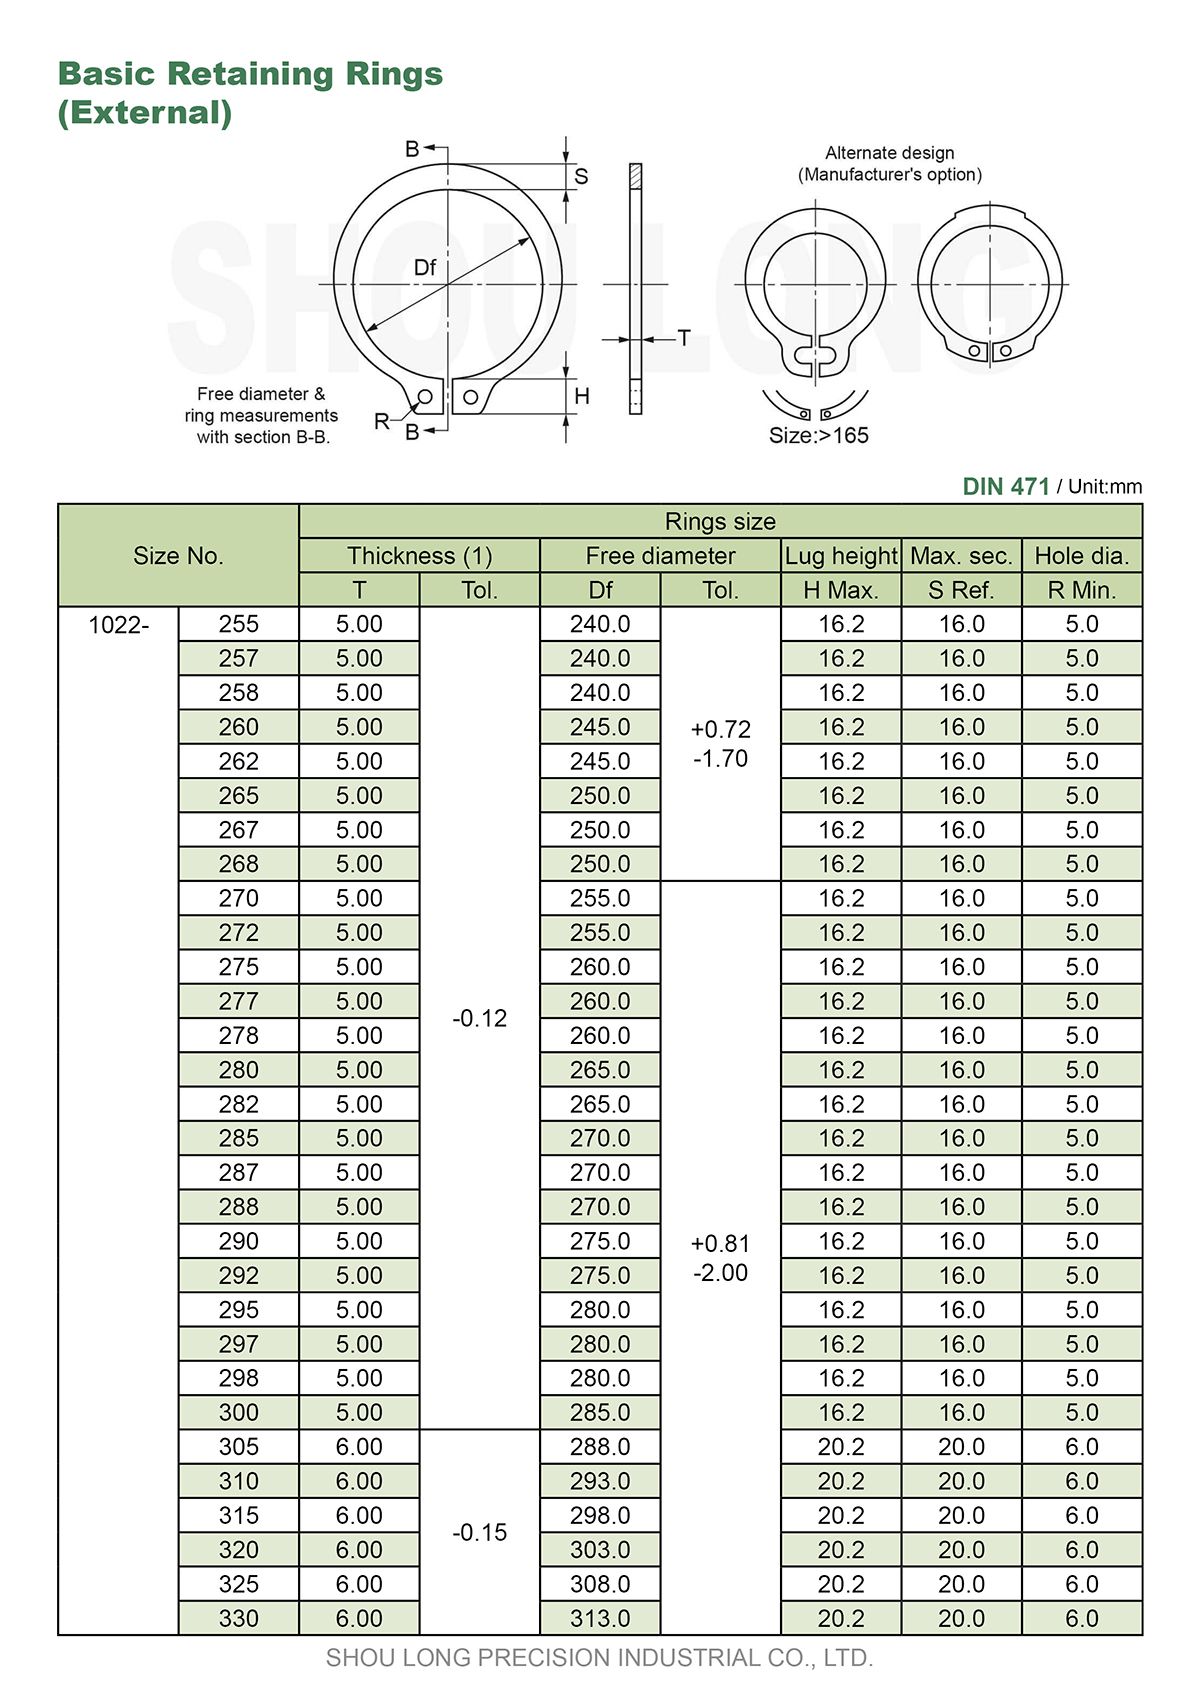 مواصفات حلقات الاحتفاظ الأساسية بالمقاسات المترية للعمود DIN471-6